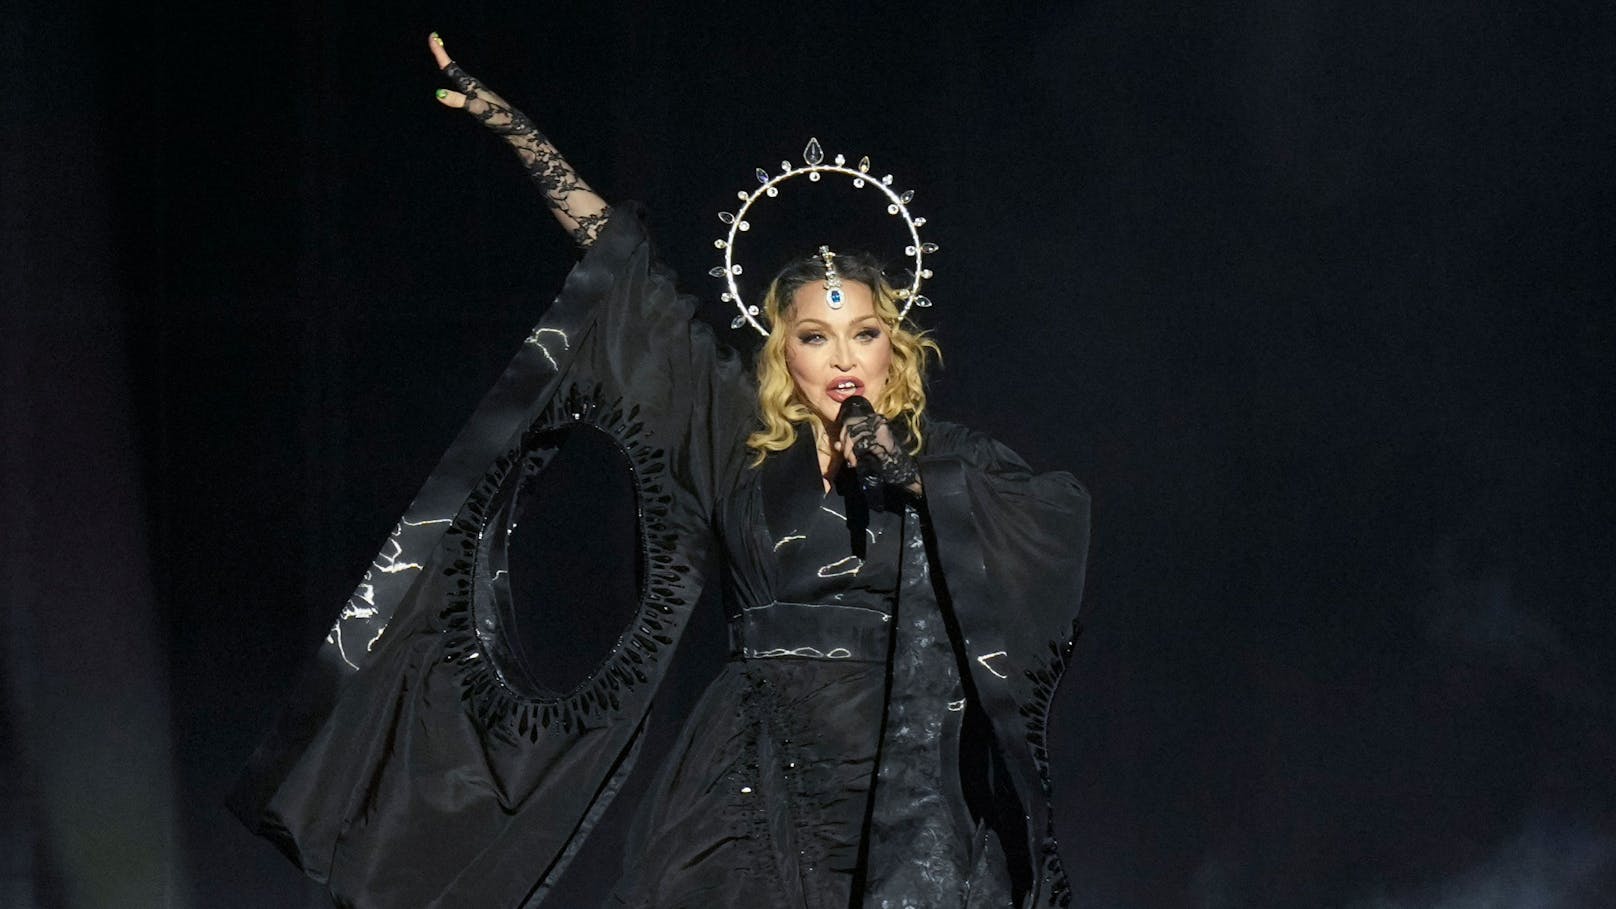 Megakonzert: 1,5 Millionen Fans bei Madonna-Auftritt